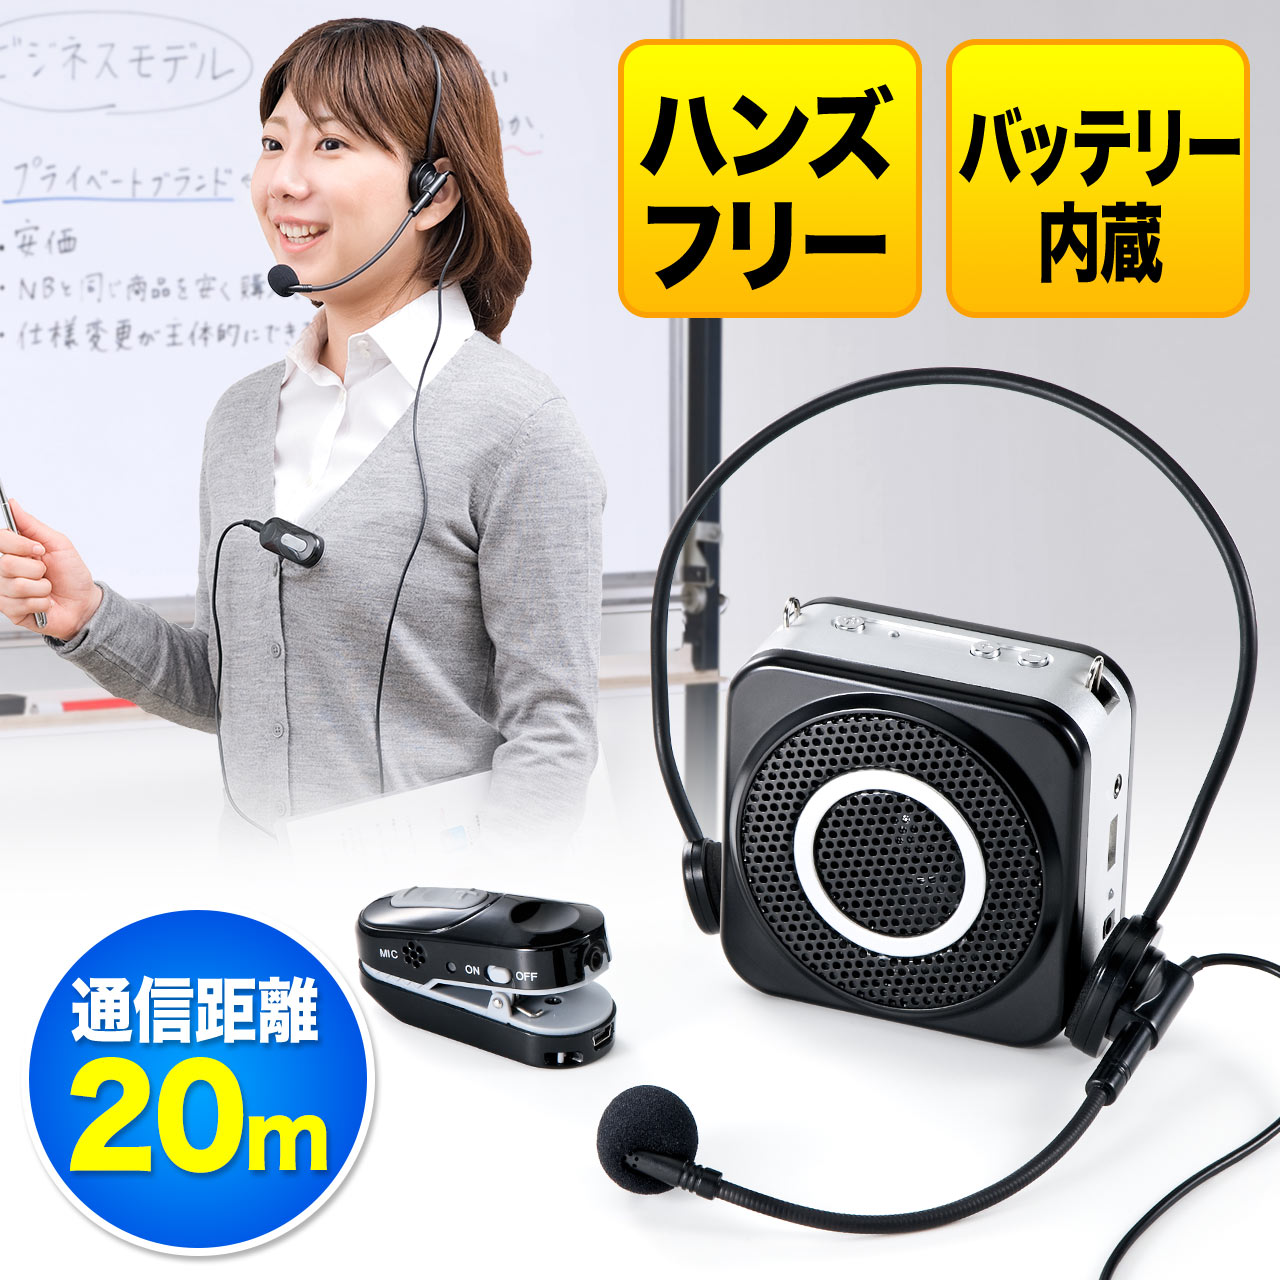 15107円 無料発送 サンワサプライ:ワイヤレスマイク MM-SPHMW3 メーカー直送品 ワイヤレスマイク